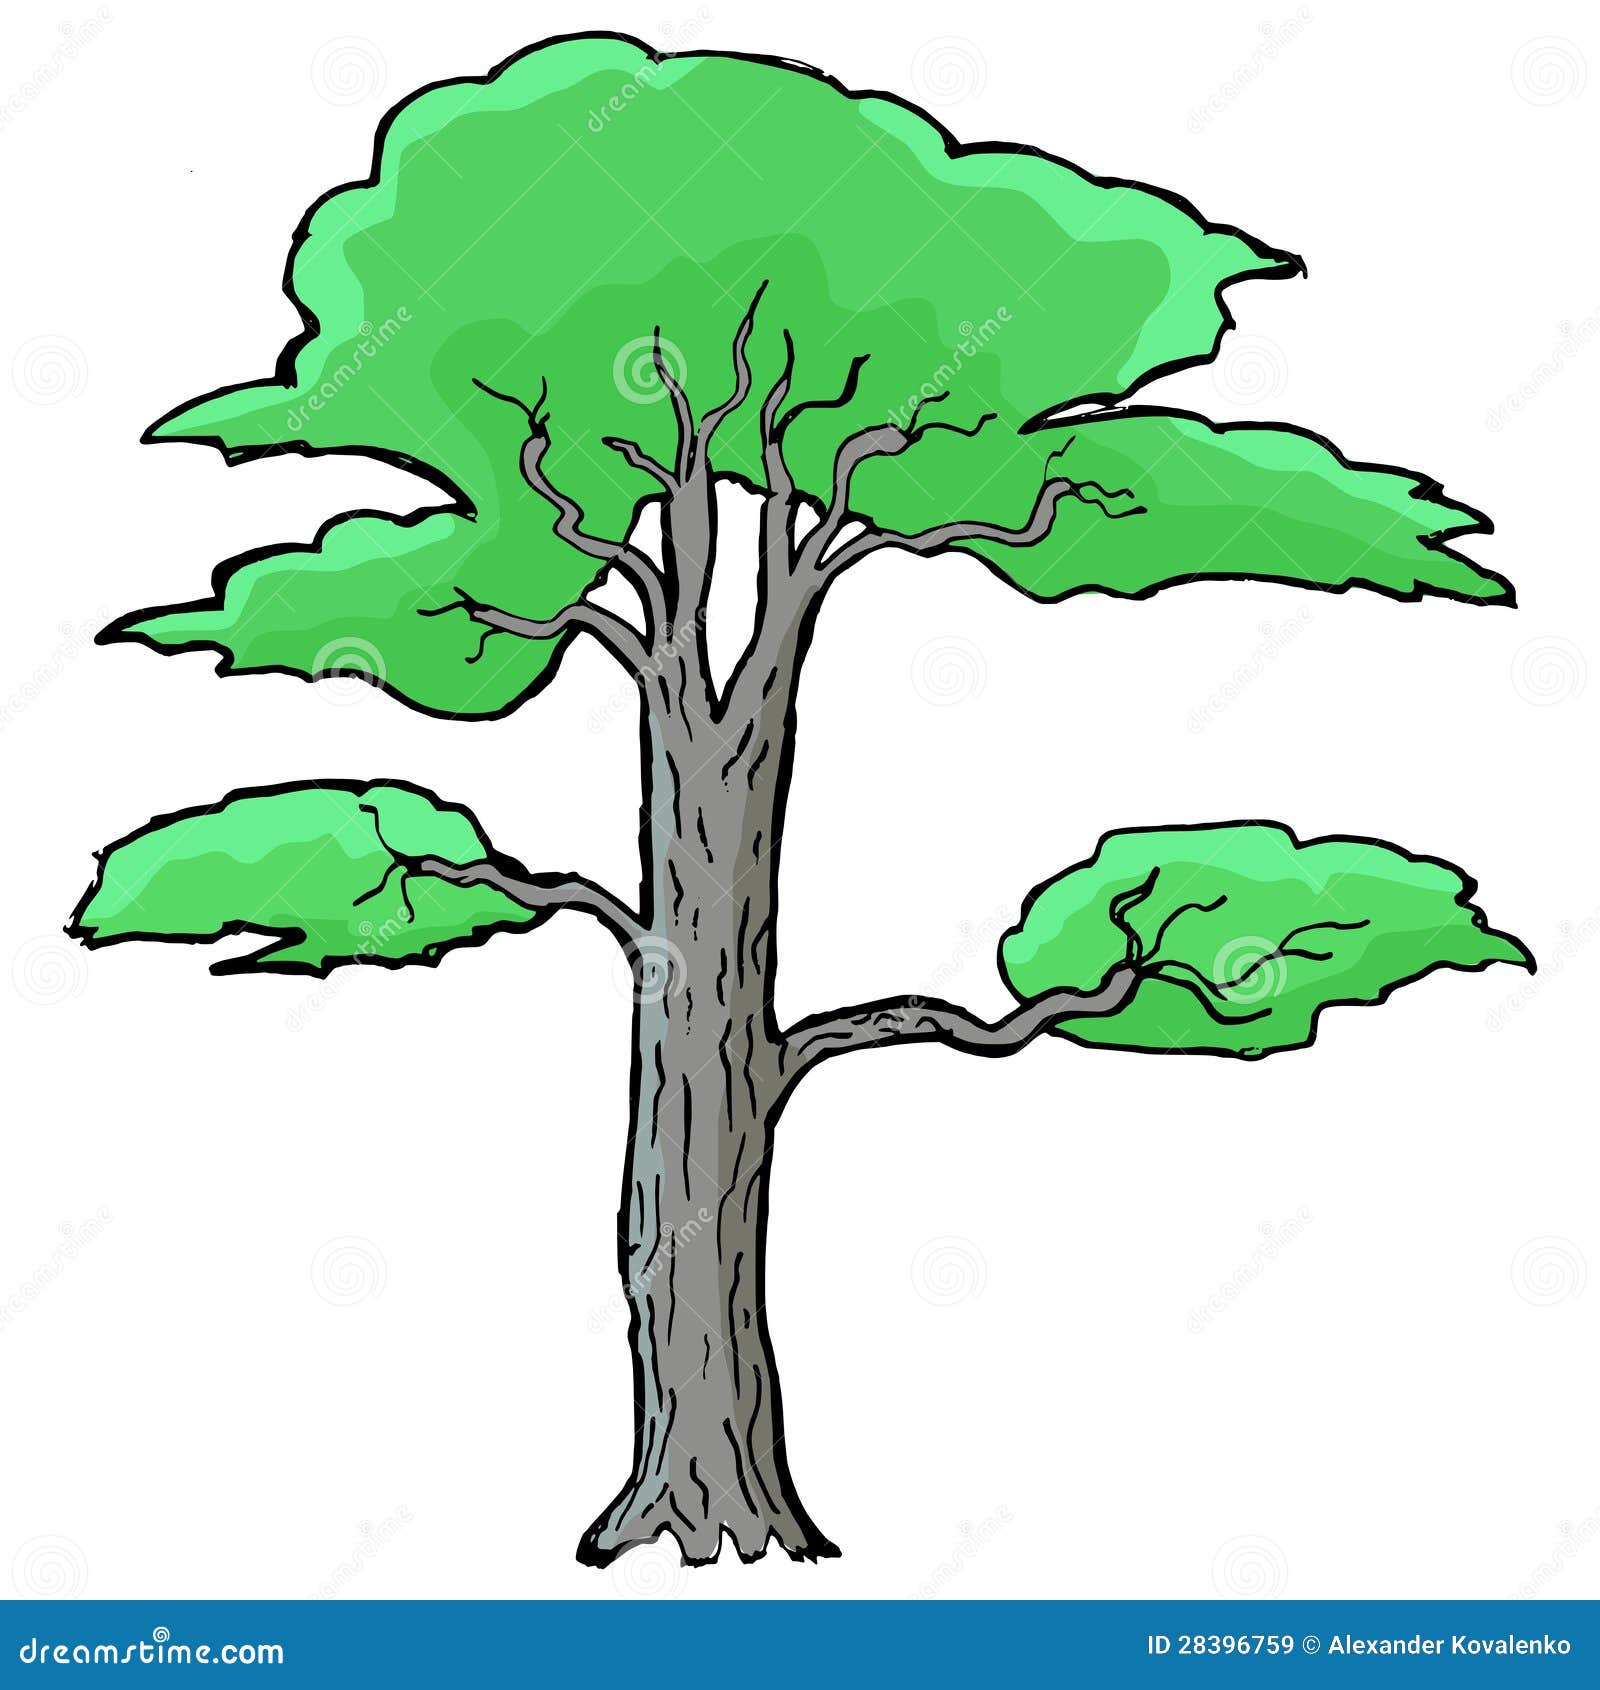 acacia tree clipart - photo #27